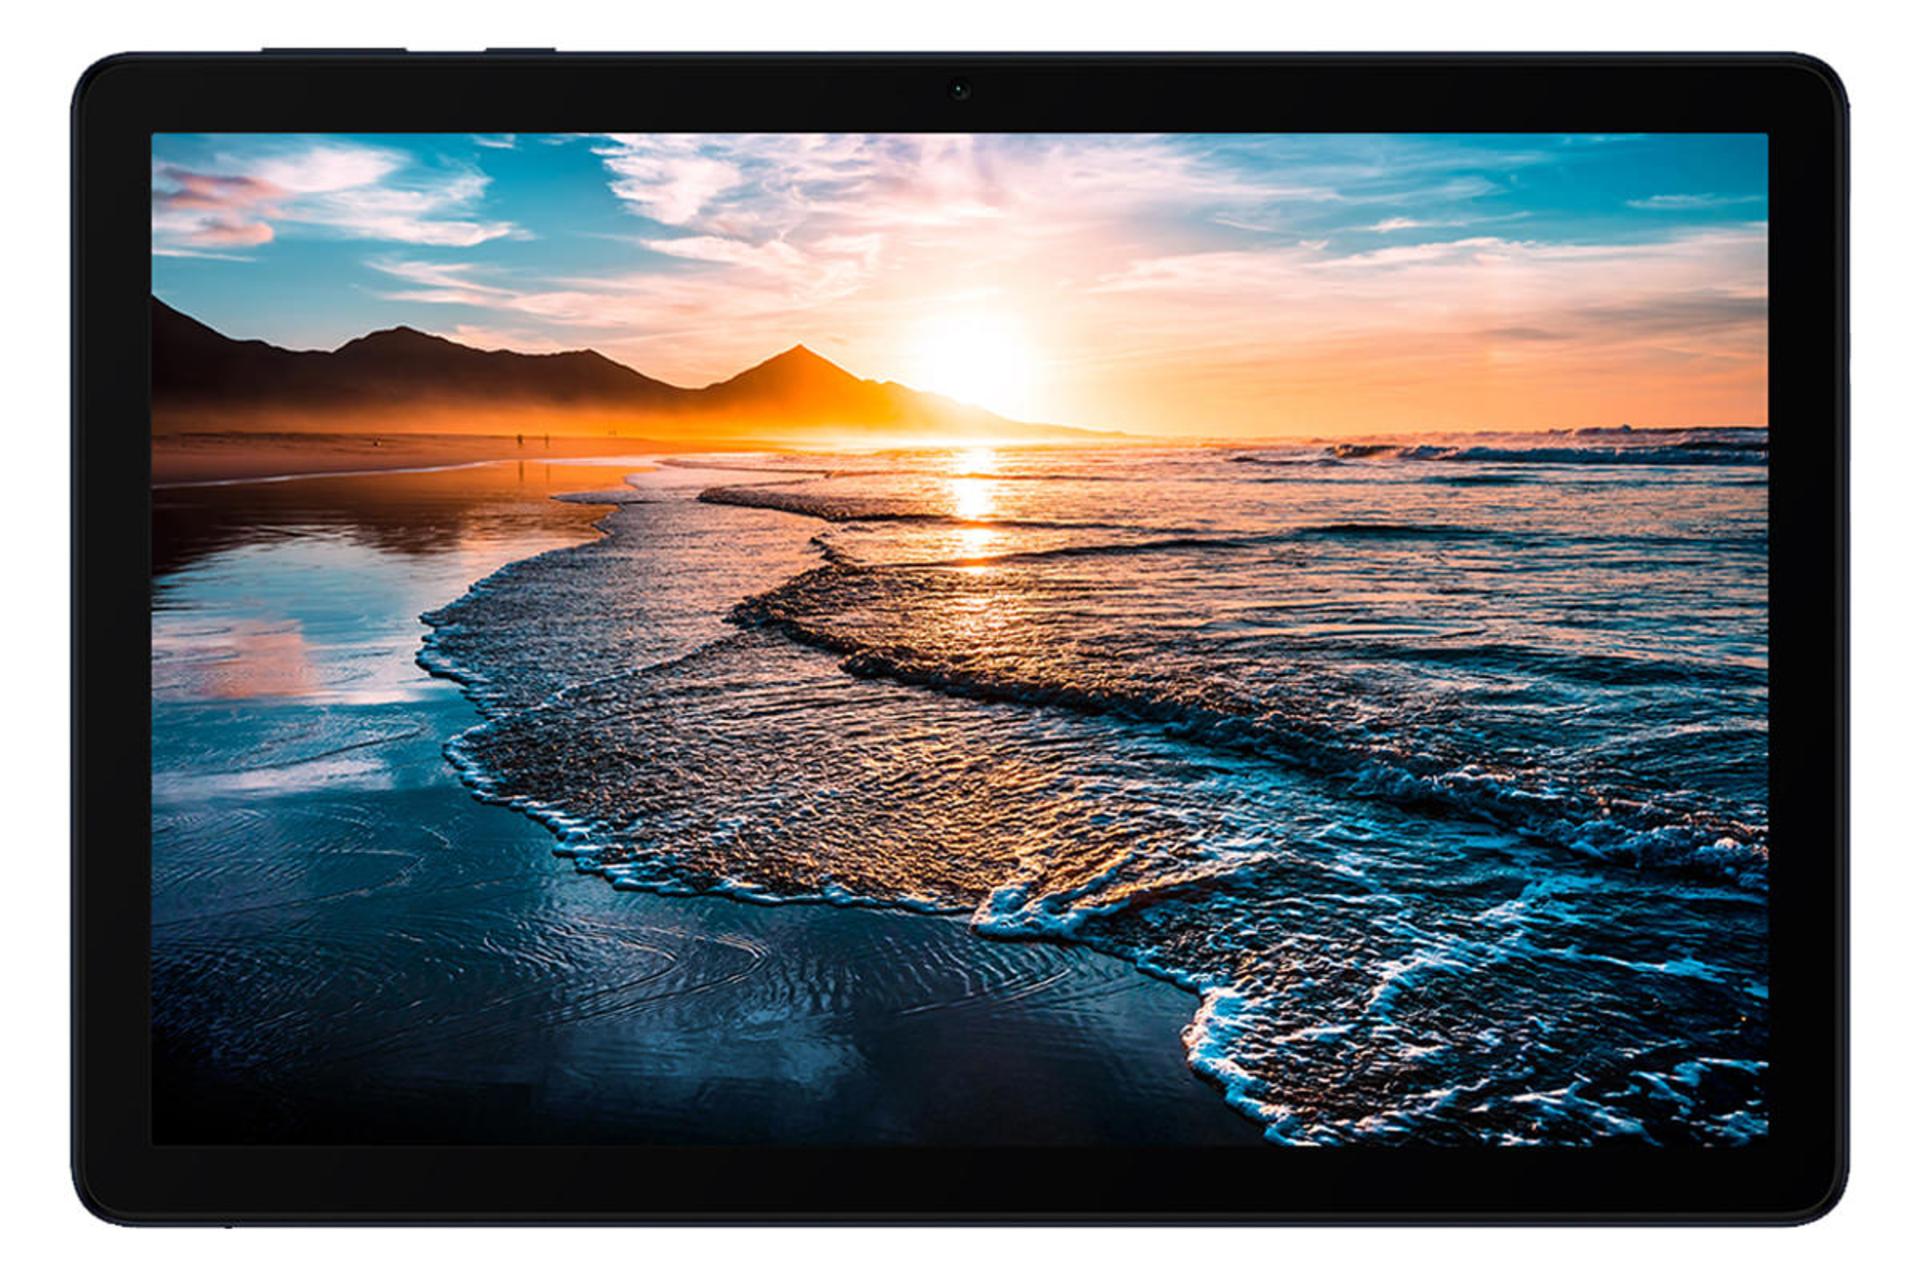 تبلت میت پد 10.8 هواوی نمای جلو - صفحه نمایش / Huawei MatePad 10.8